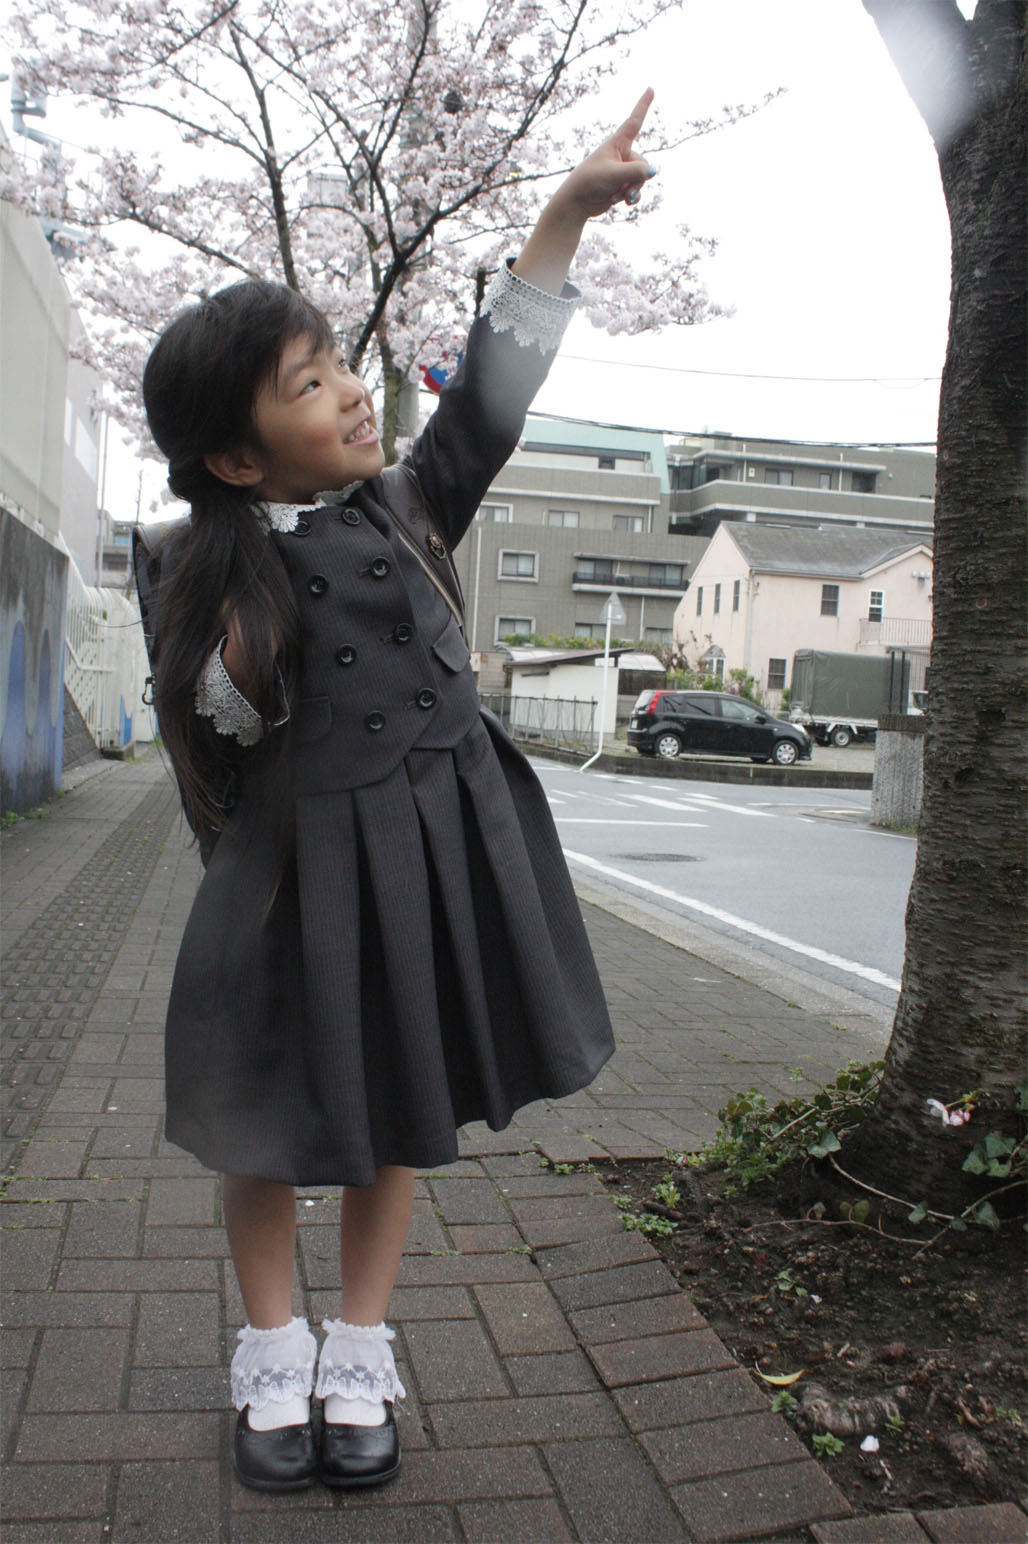 入学式自体は週明けですが、桜がそこまで待ってくれるか微妙だったので、一足先に写真だけ先日撮ってきました。